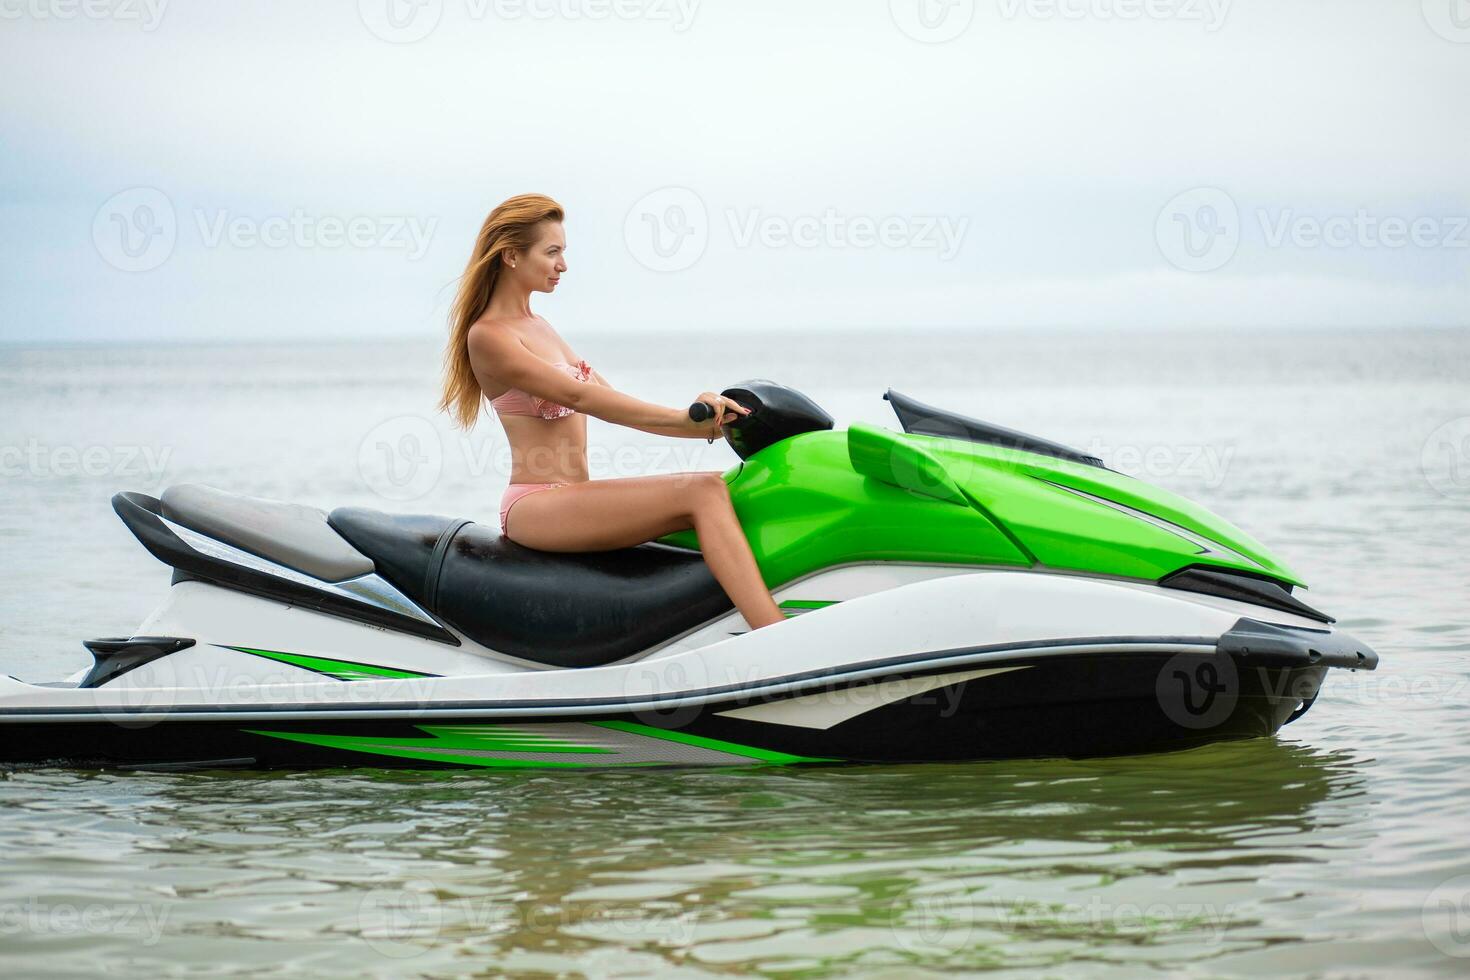 sexy woman in bikini on water scooter in sea summer style photo